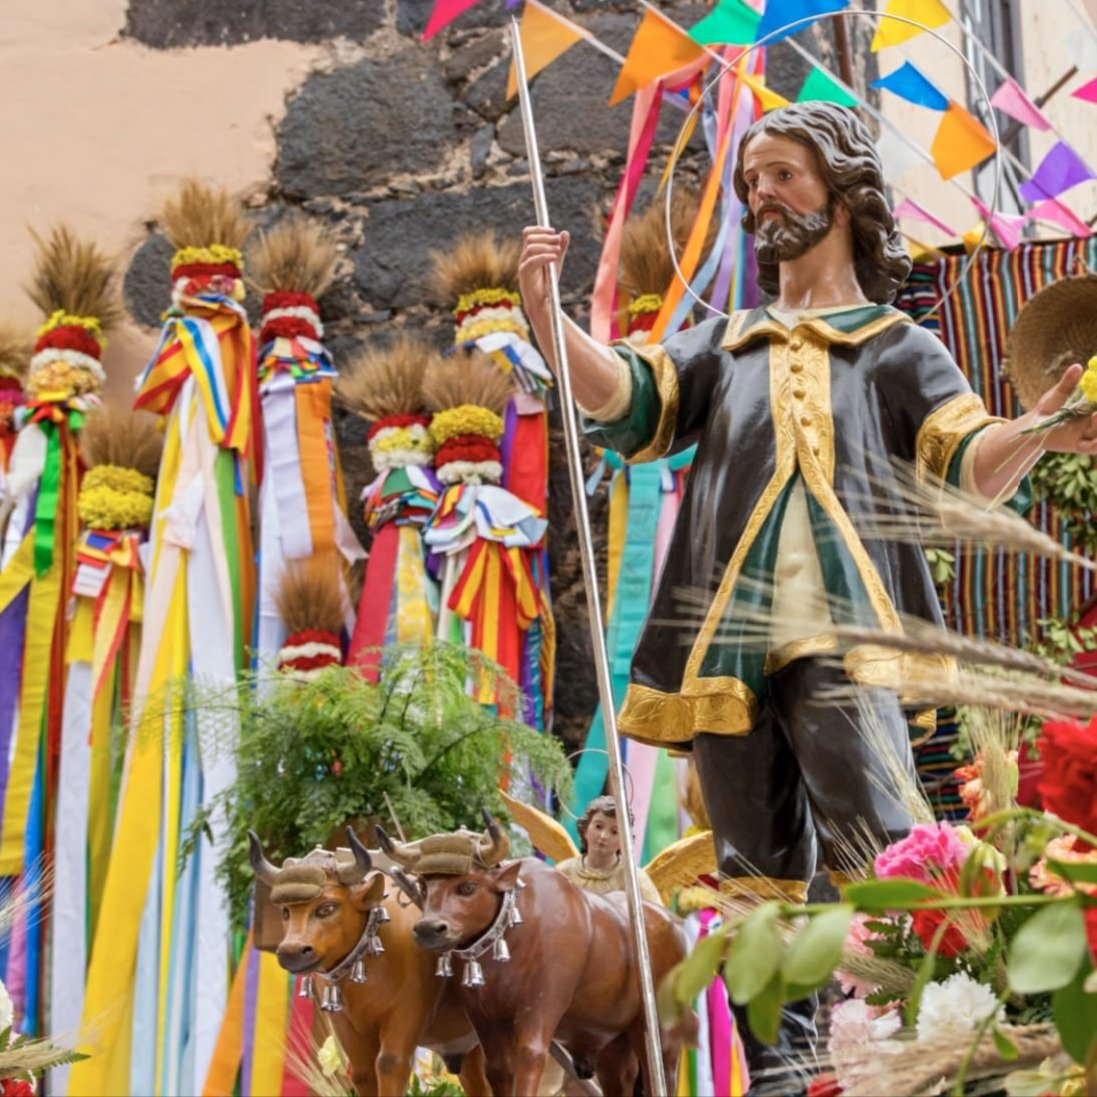 Viva San Isidro Labrador🎉

Hoy comienzan las Fiestas Patronales de #LaOrotava 👏

Este año las fiestas tienen la peculiaridad de que el Vaticano ha otorgado el Patronazgo Canónico de la Villa de La Orotava a San Isidro Labrador

#OrgulloVillero